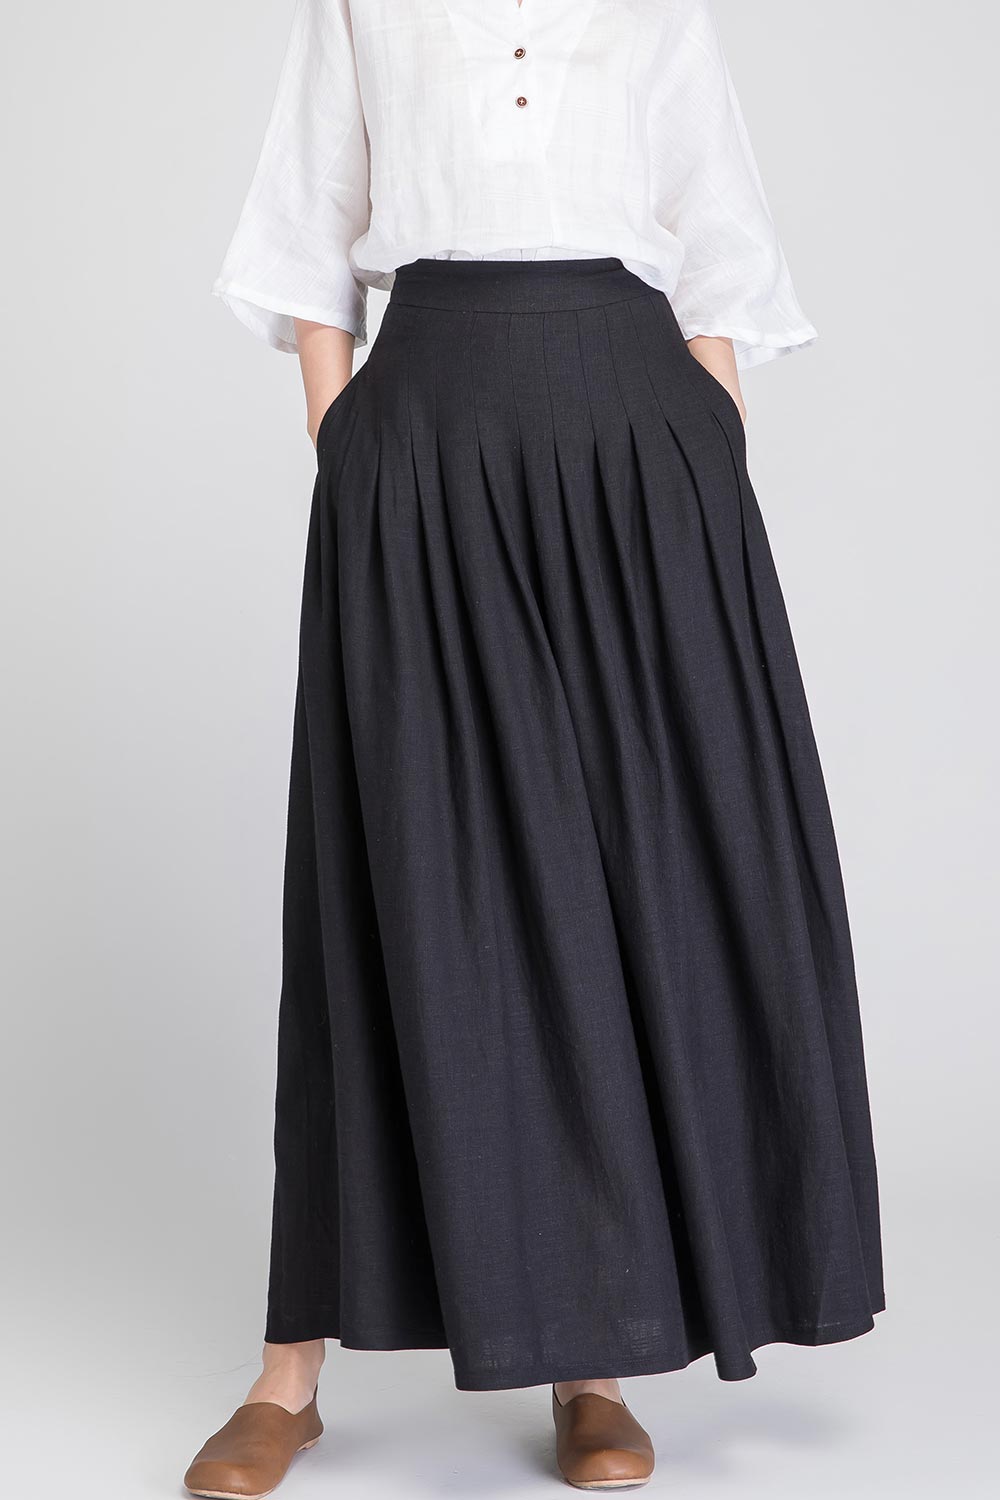 Black linen maxi skirt 1890 – XiaoLizi